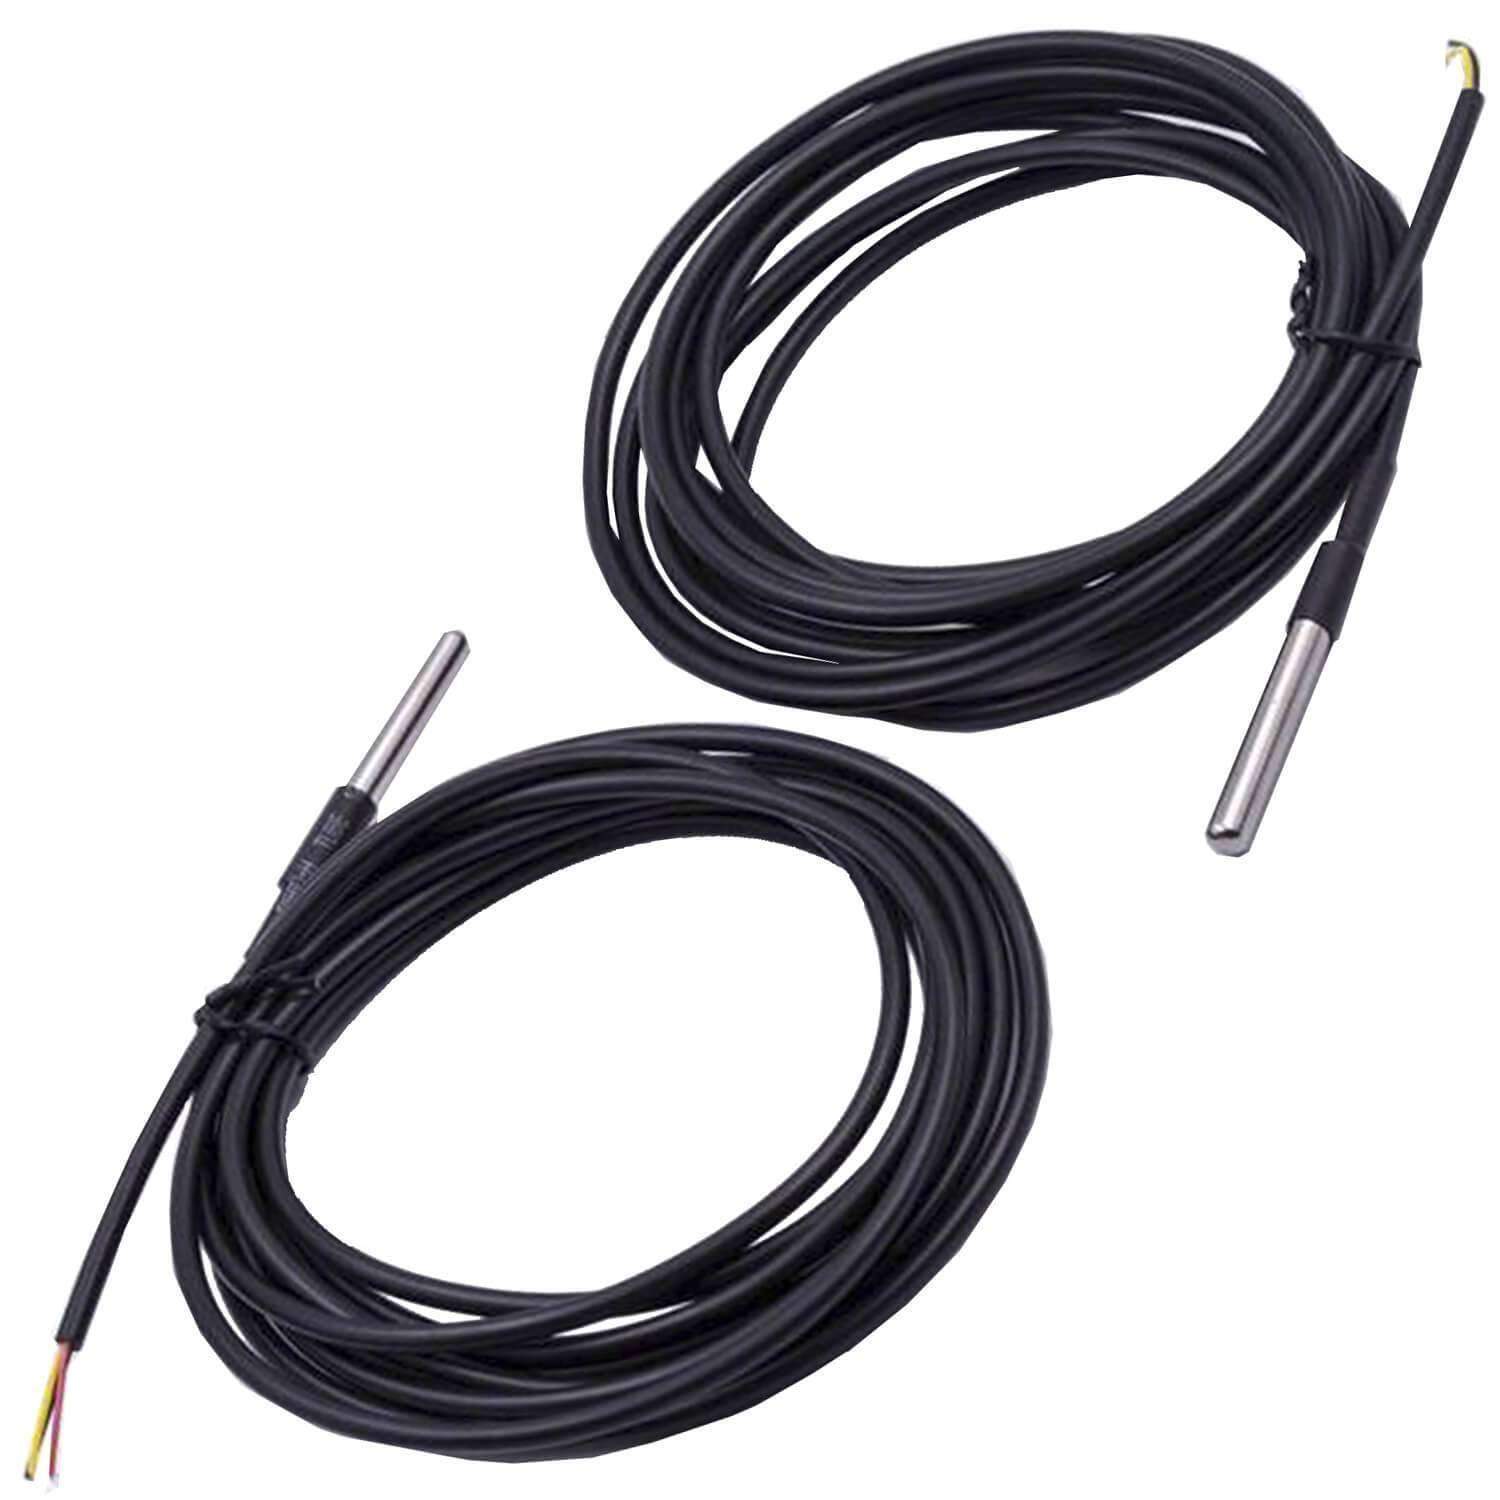 3M Kabel DS18B20 digitaler Edelstahl Temperatursensor Temperaturfühler